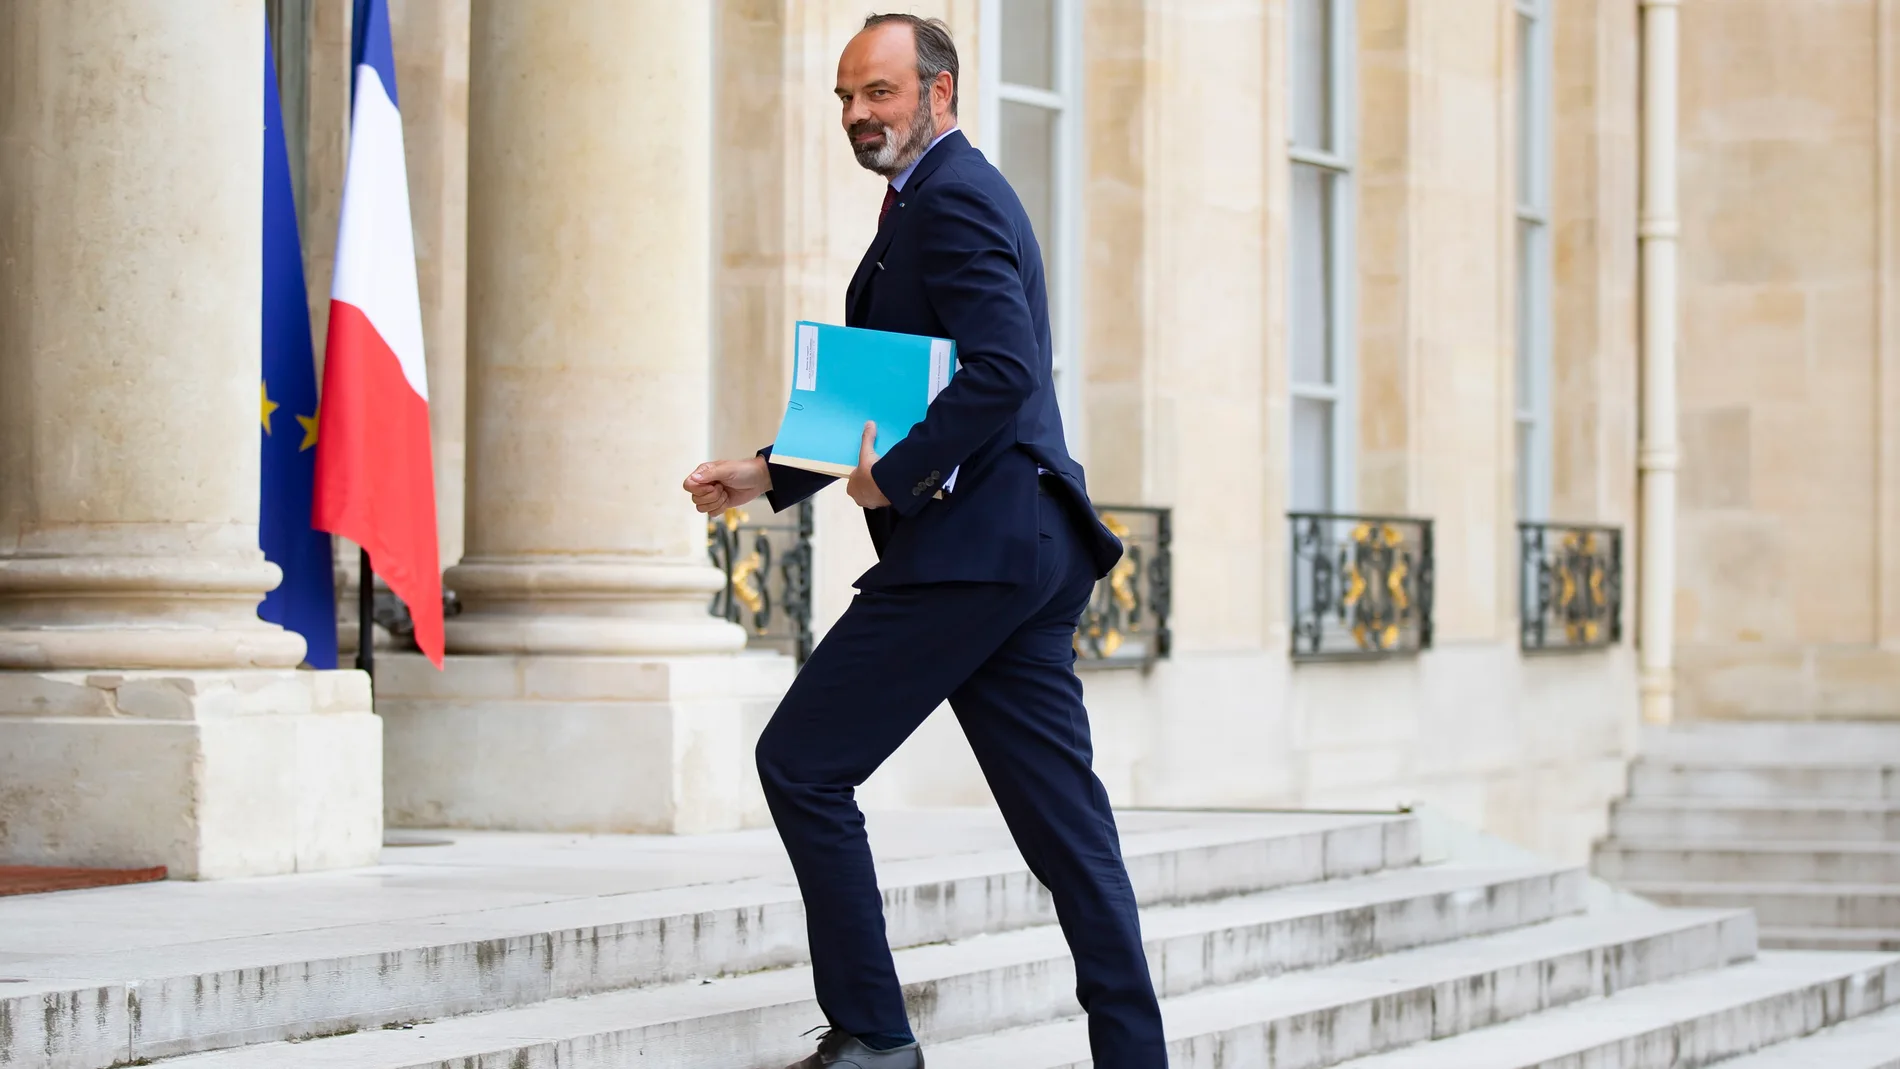 Édouard Philippe fue primer ministro francés entre 2017 y 2020